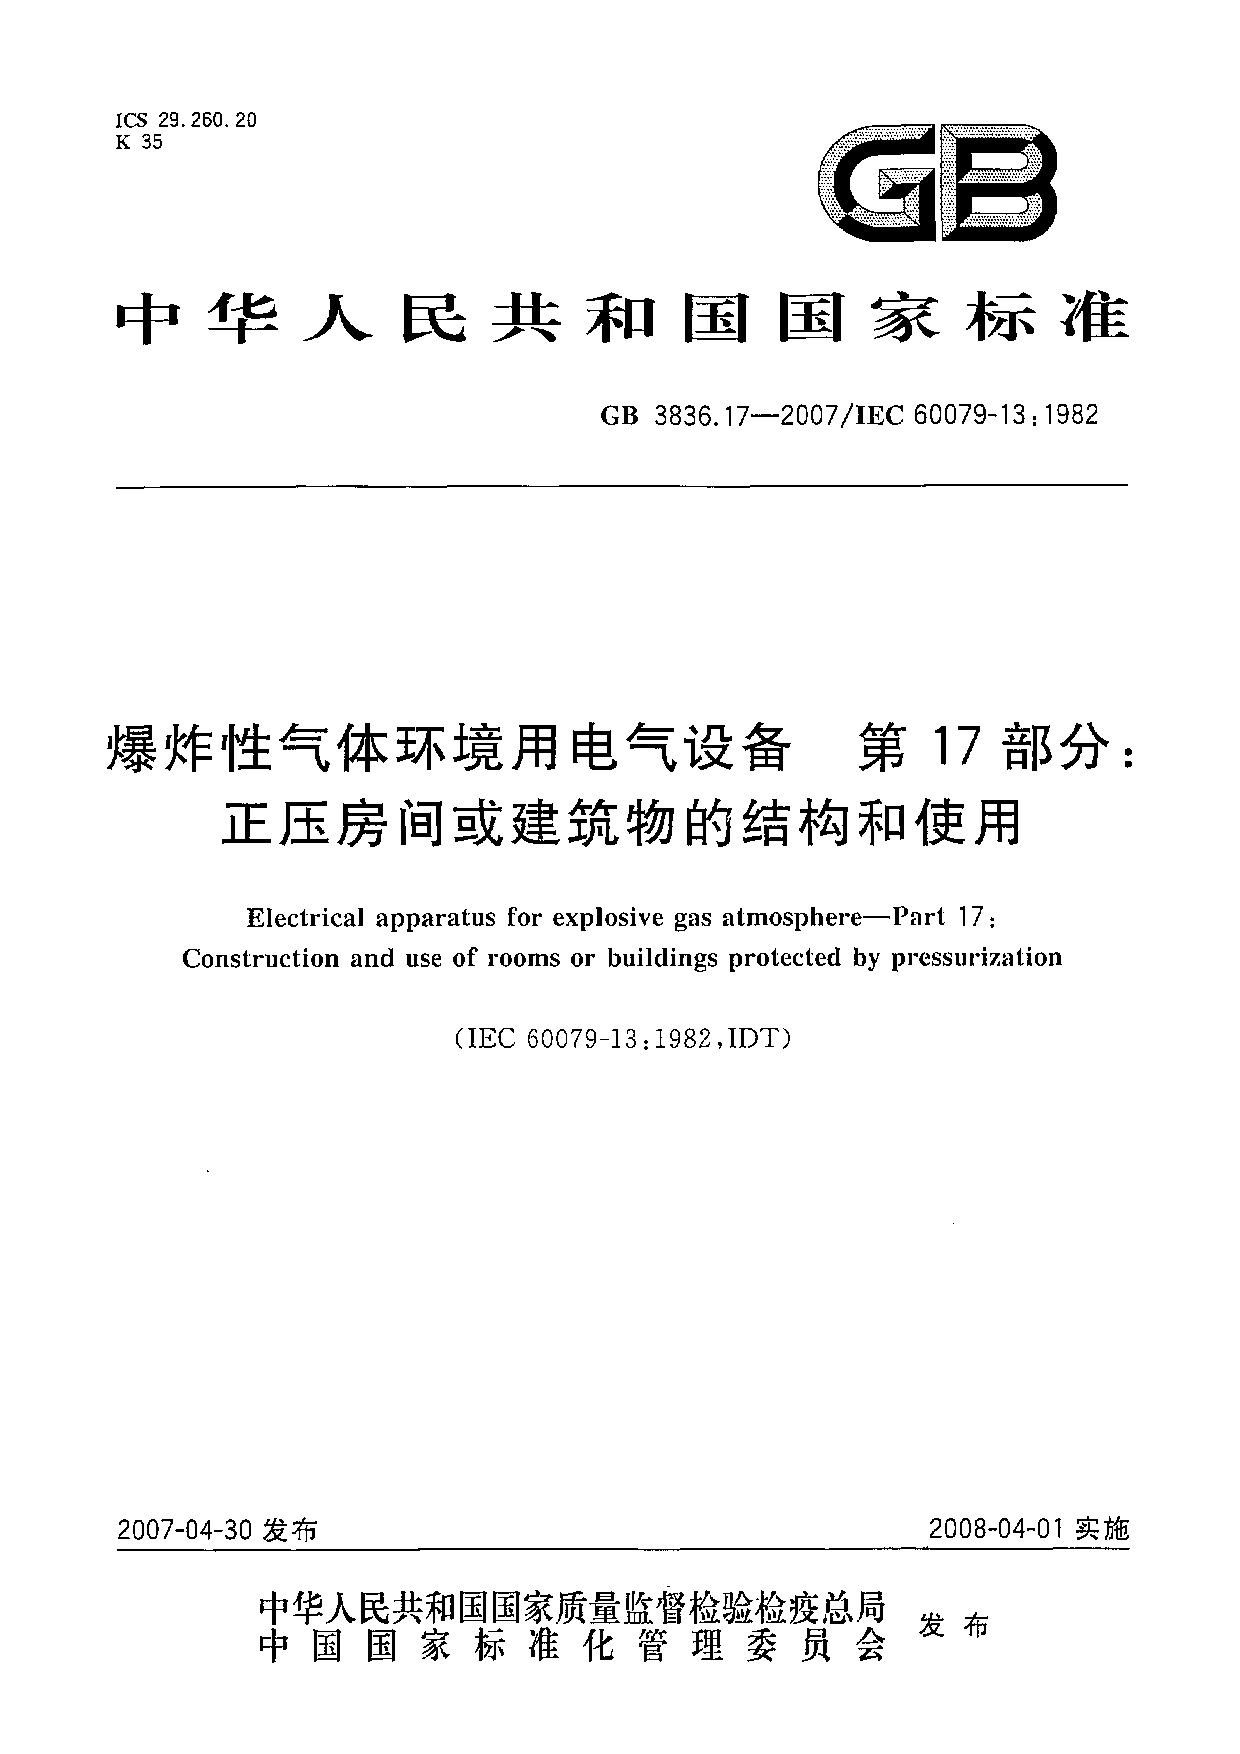 IEC 60079-13:1982封面图